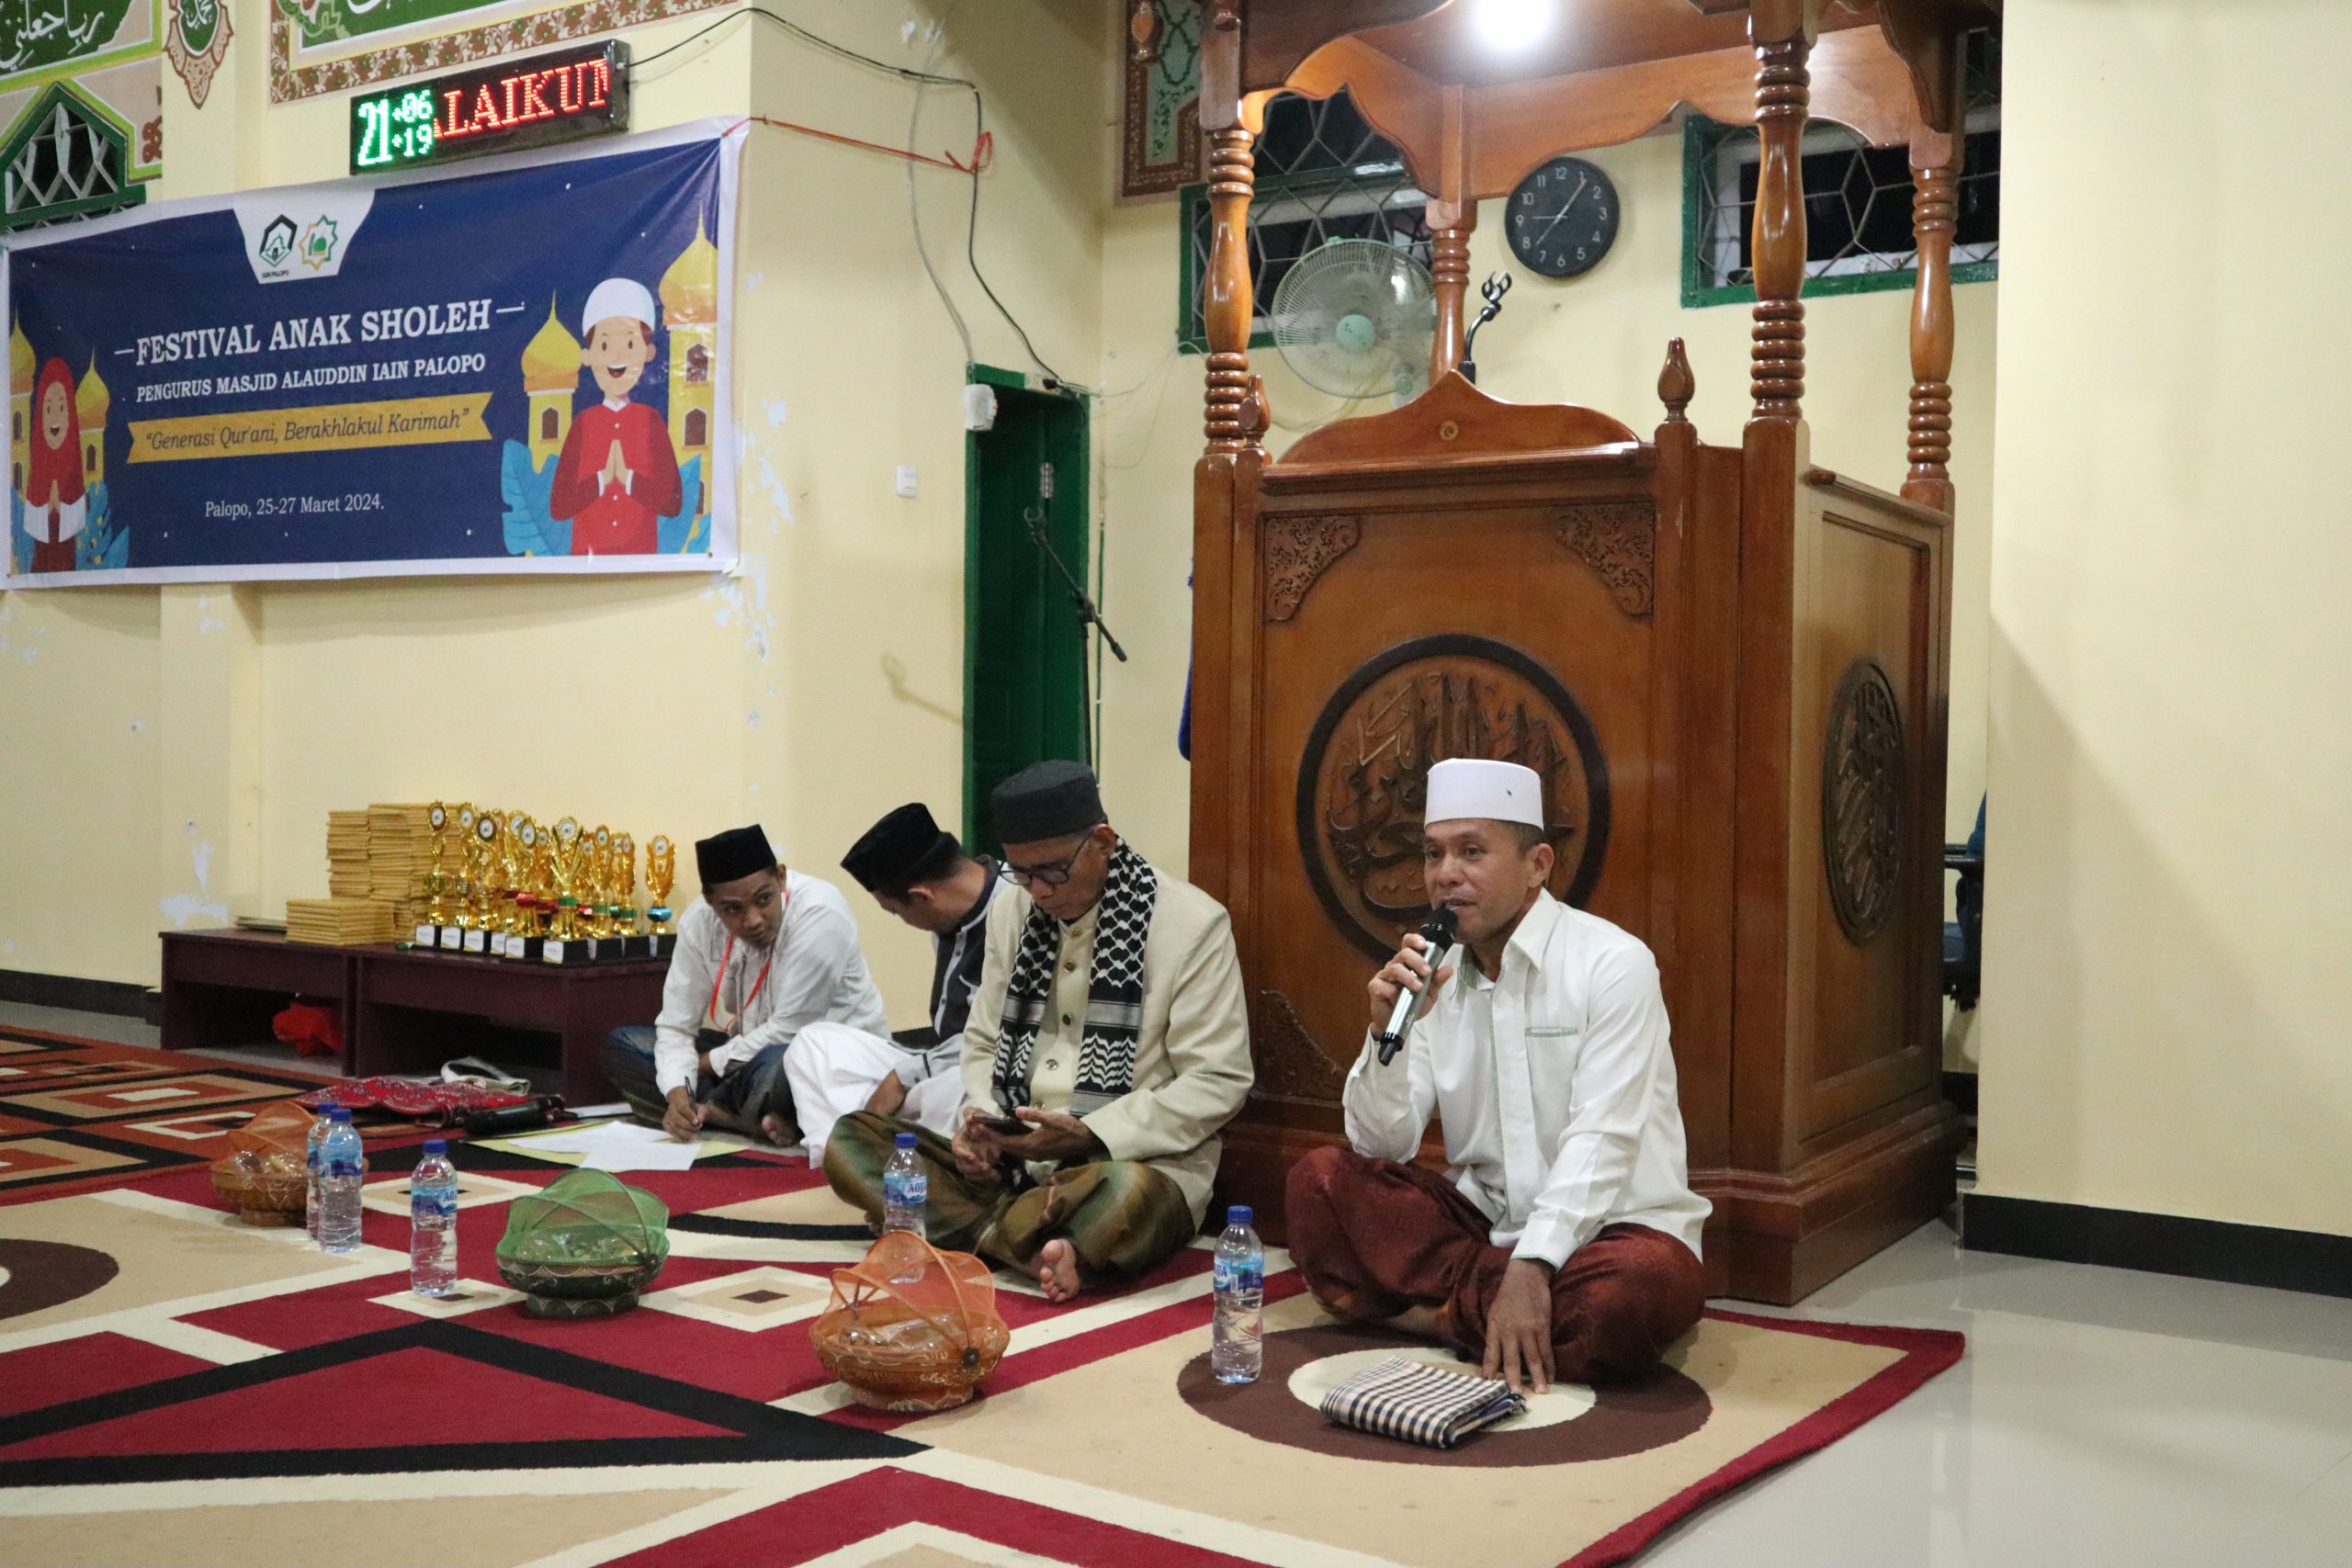 Wakil Rektor III Apresiasi Festival Anak Saleh Berlangsung Semarak di Masjid Alauddin IAIN Palopo